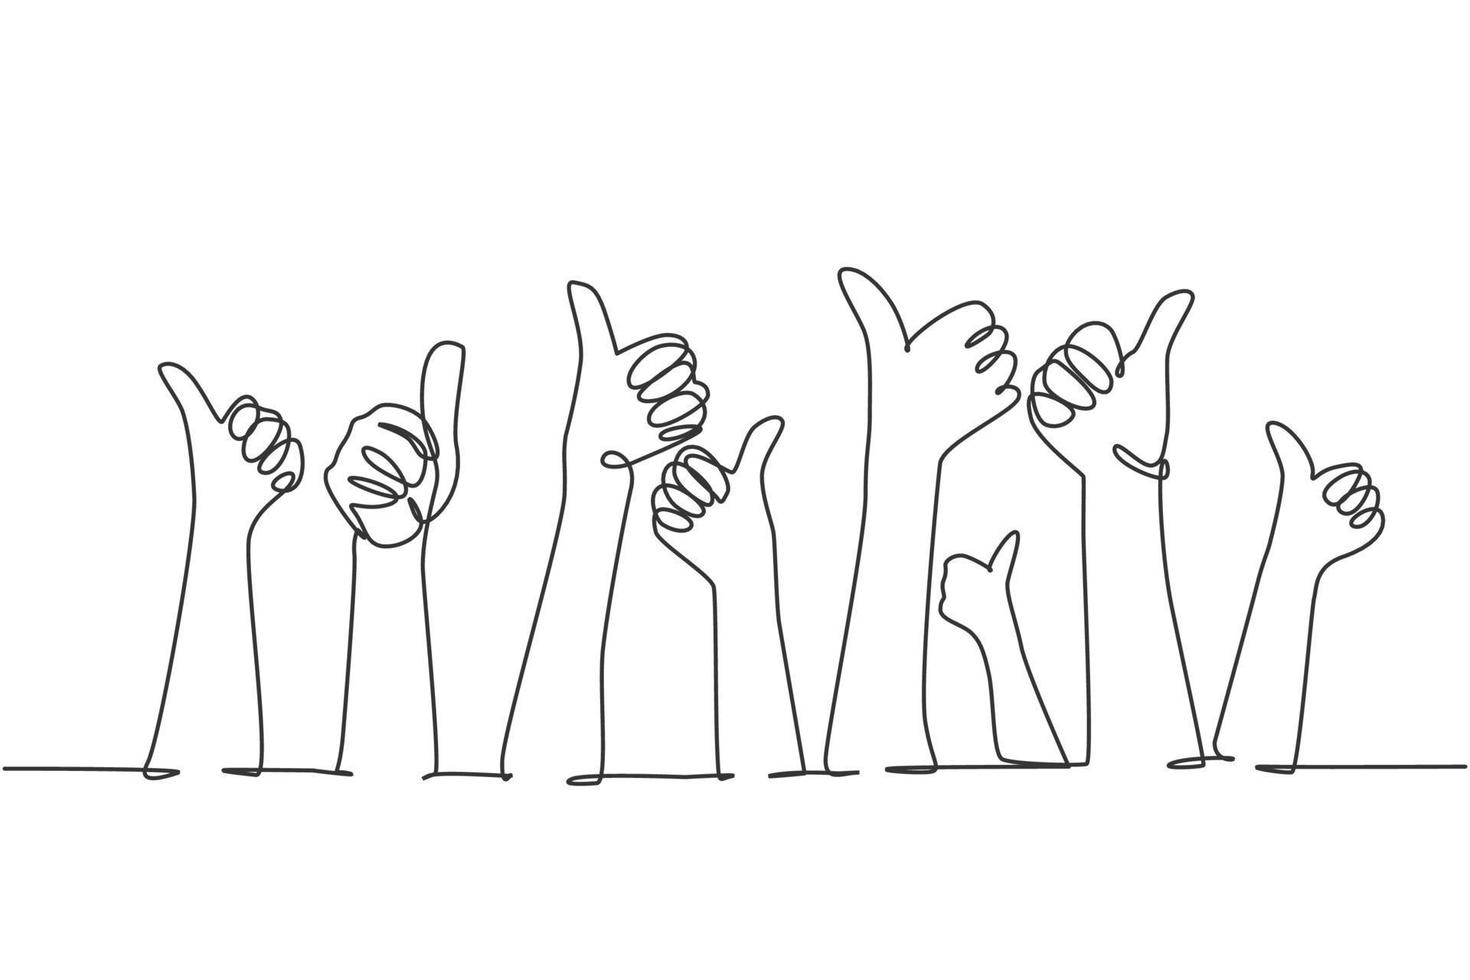 un disegno a tratteggio delle mani del braccio delle persone che si alzano con il gesto del pollice in alto. buon servizio di eccellenza nel concetto di segno del settore aziendale. illustrazione vettoriale di disegno grafico di disegno di linea continua